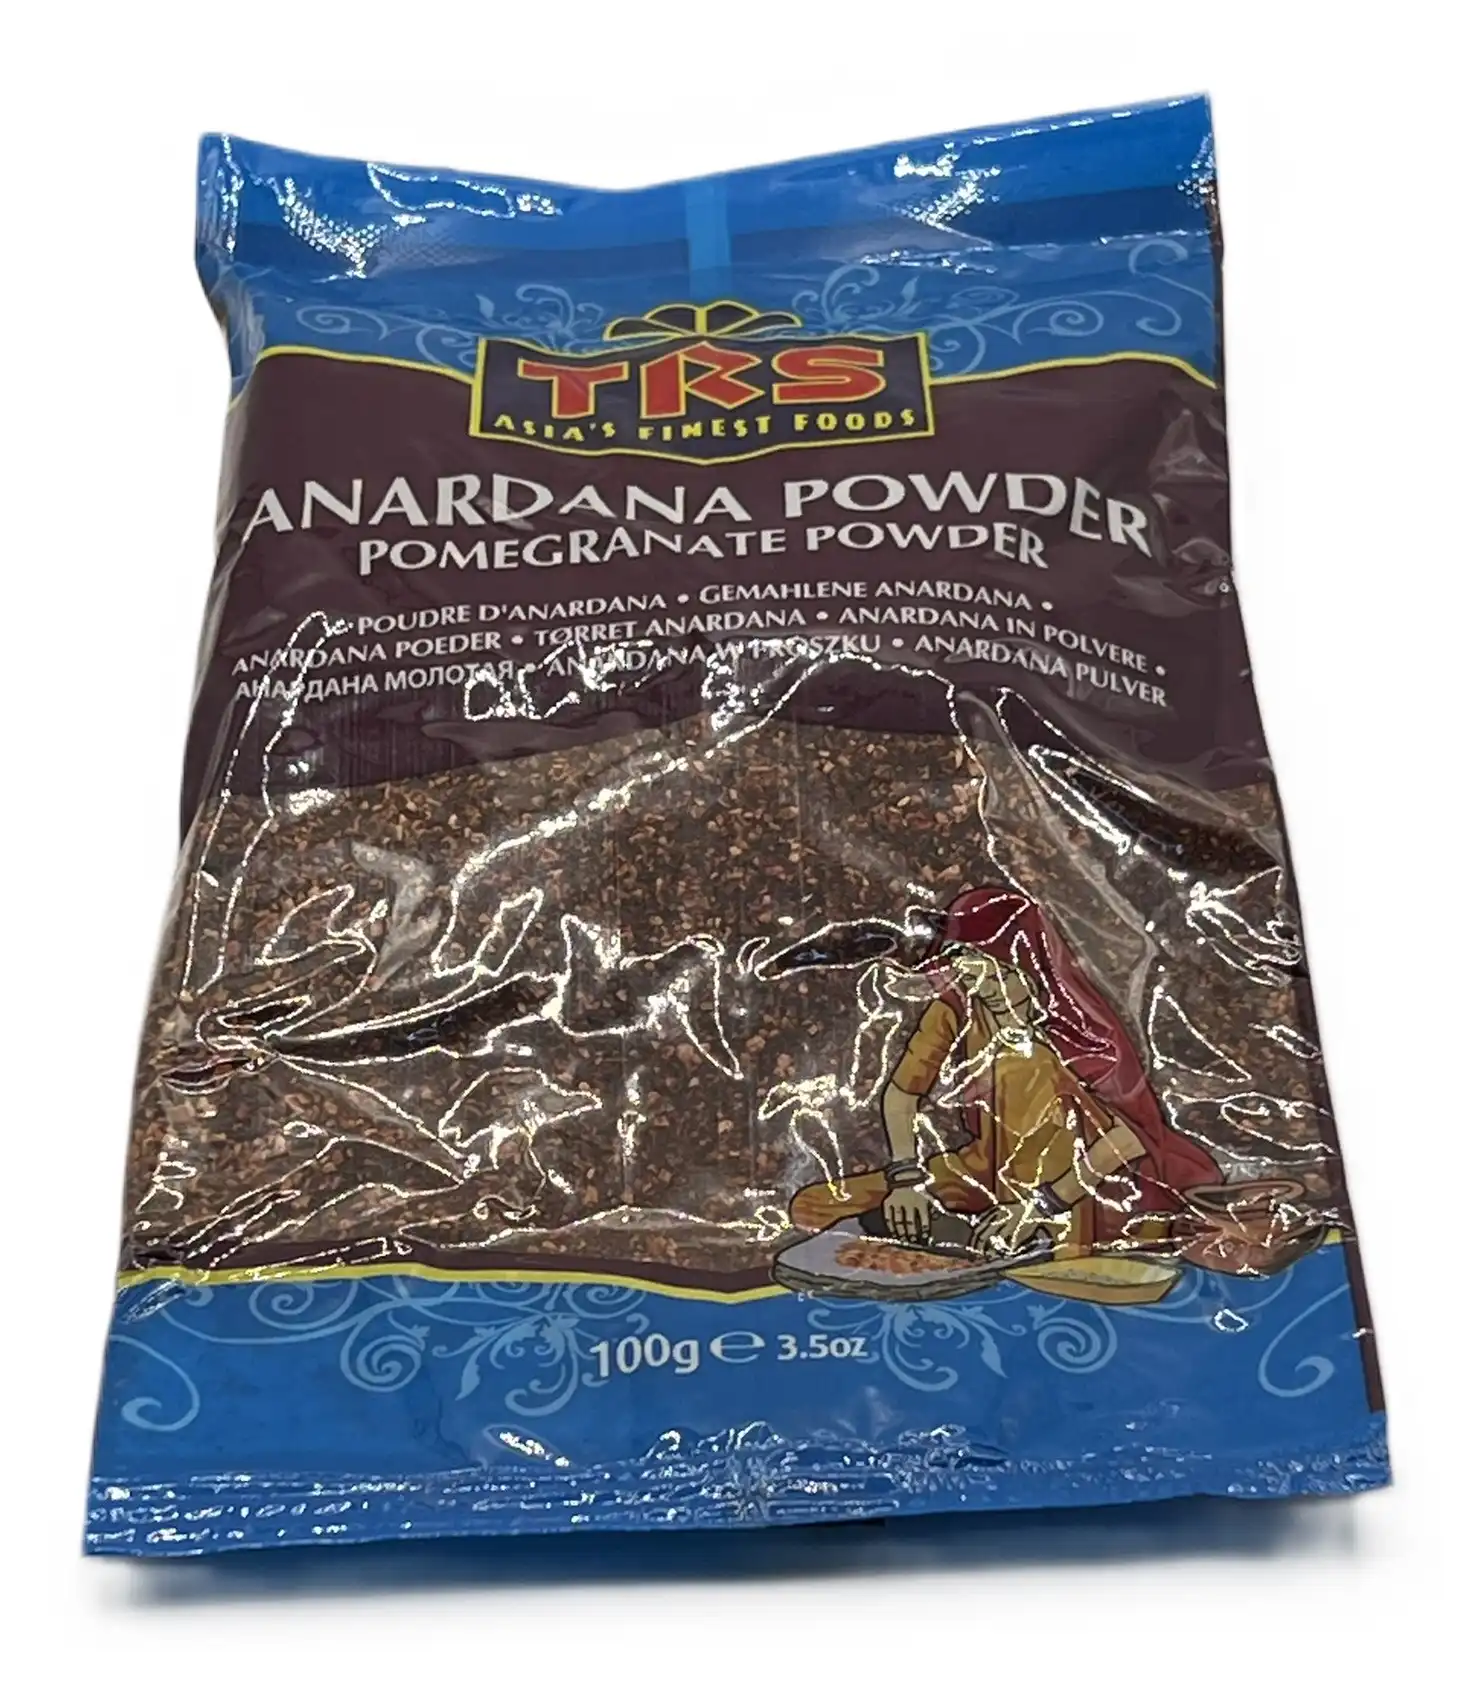 anardana powder (pomegranate powder)-trs asia's finest food